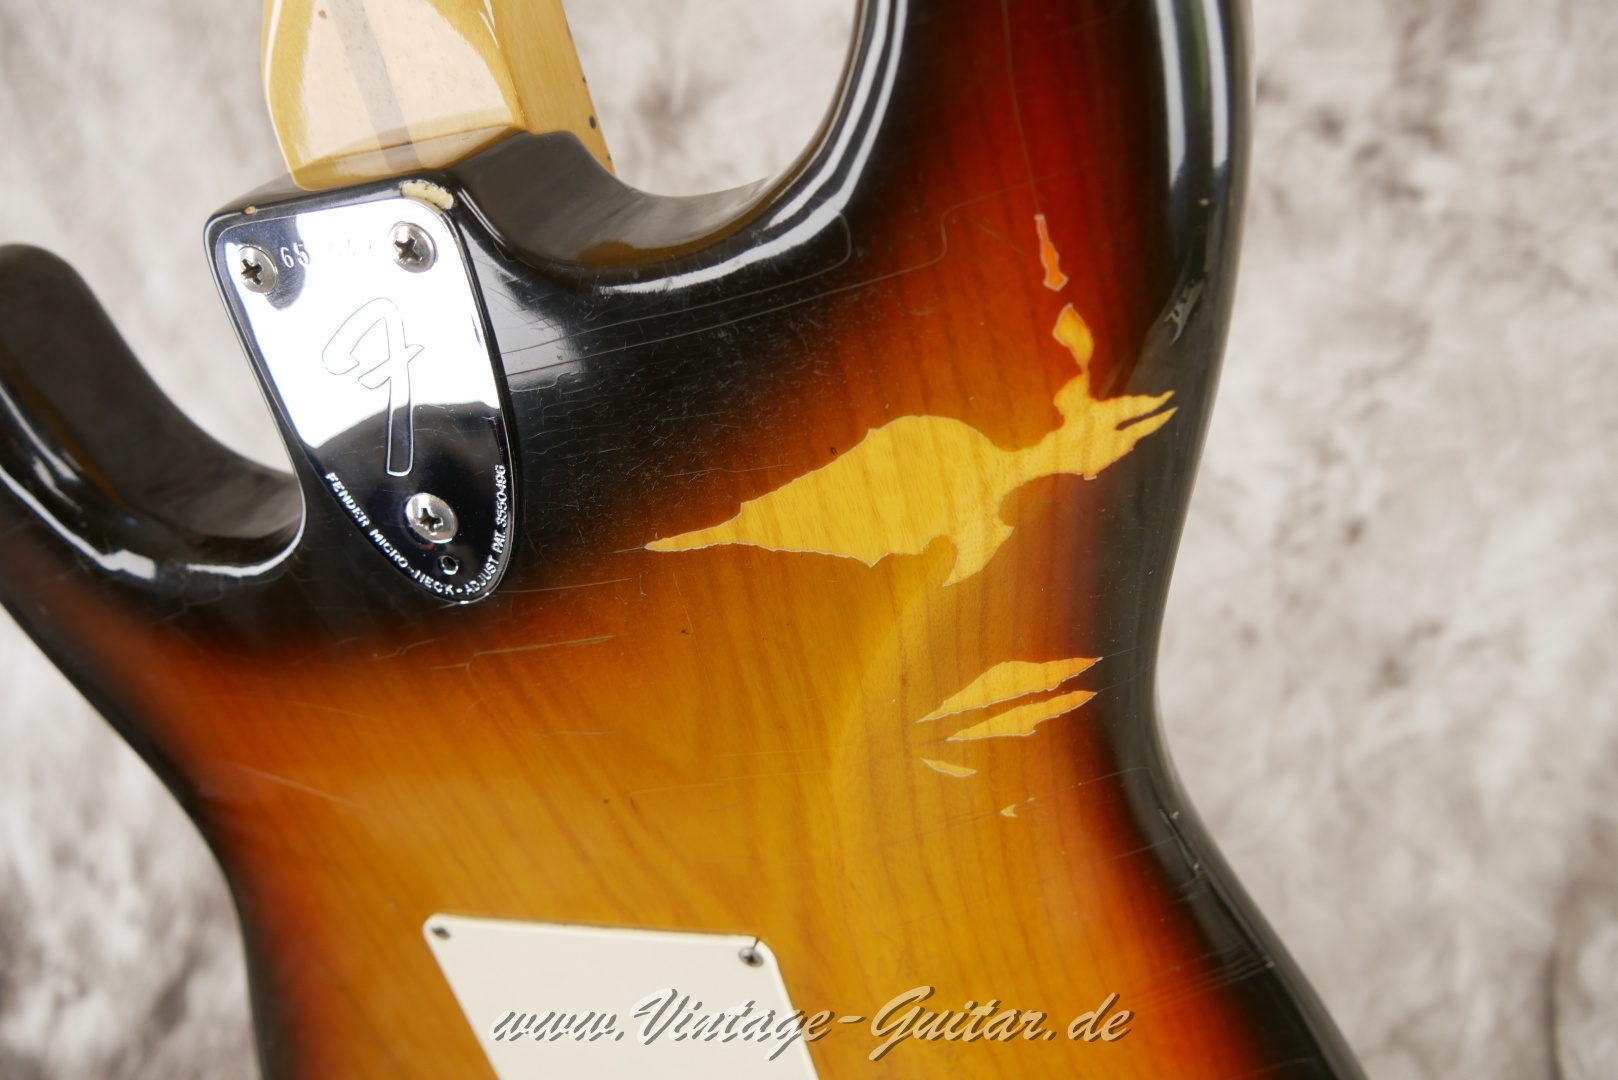 Fender-Stratocaster-1974-sunburst-010.JPG